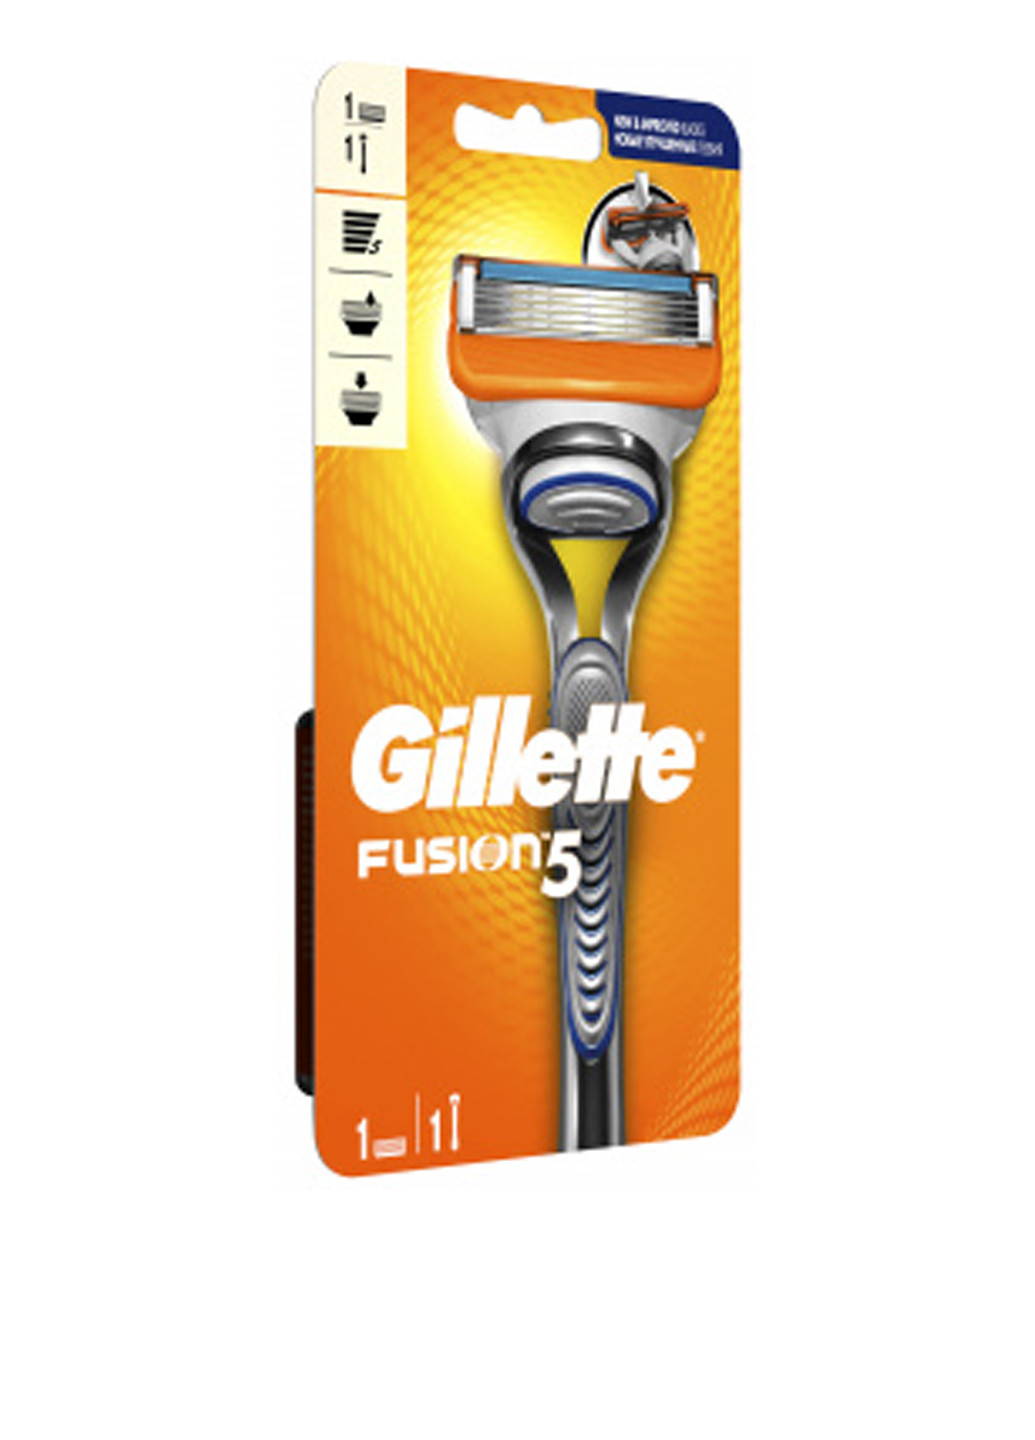 Станок-бритва Fusion5 с 1 сменным картриджем Gillette (138200672)